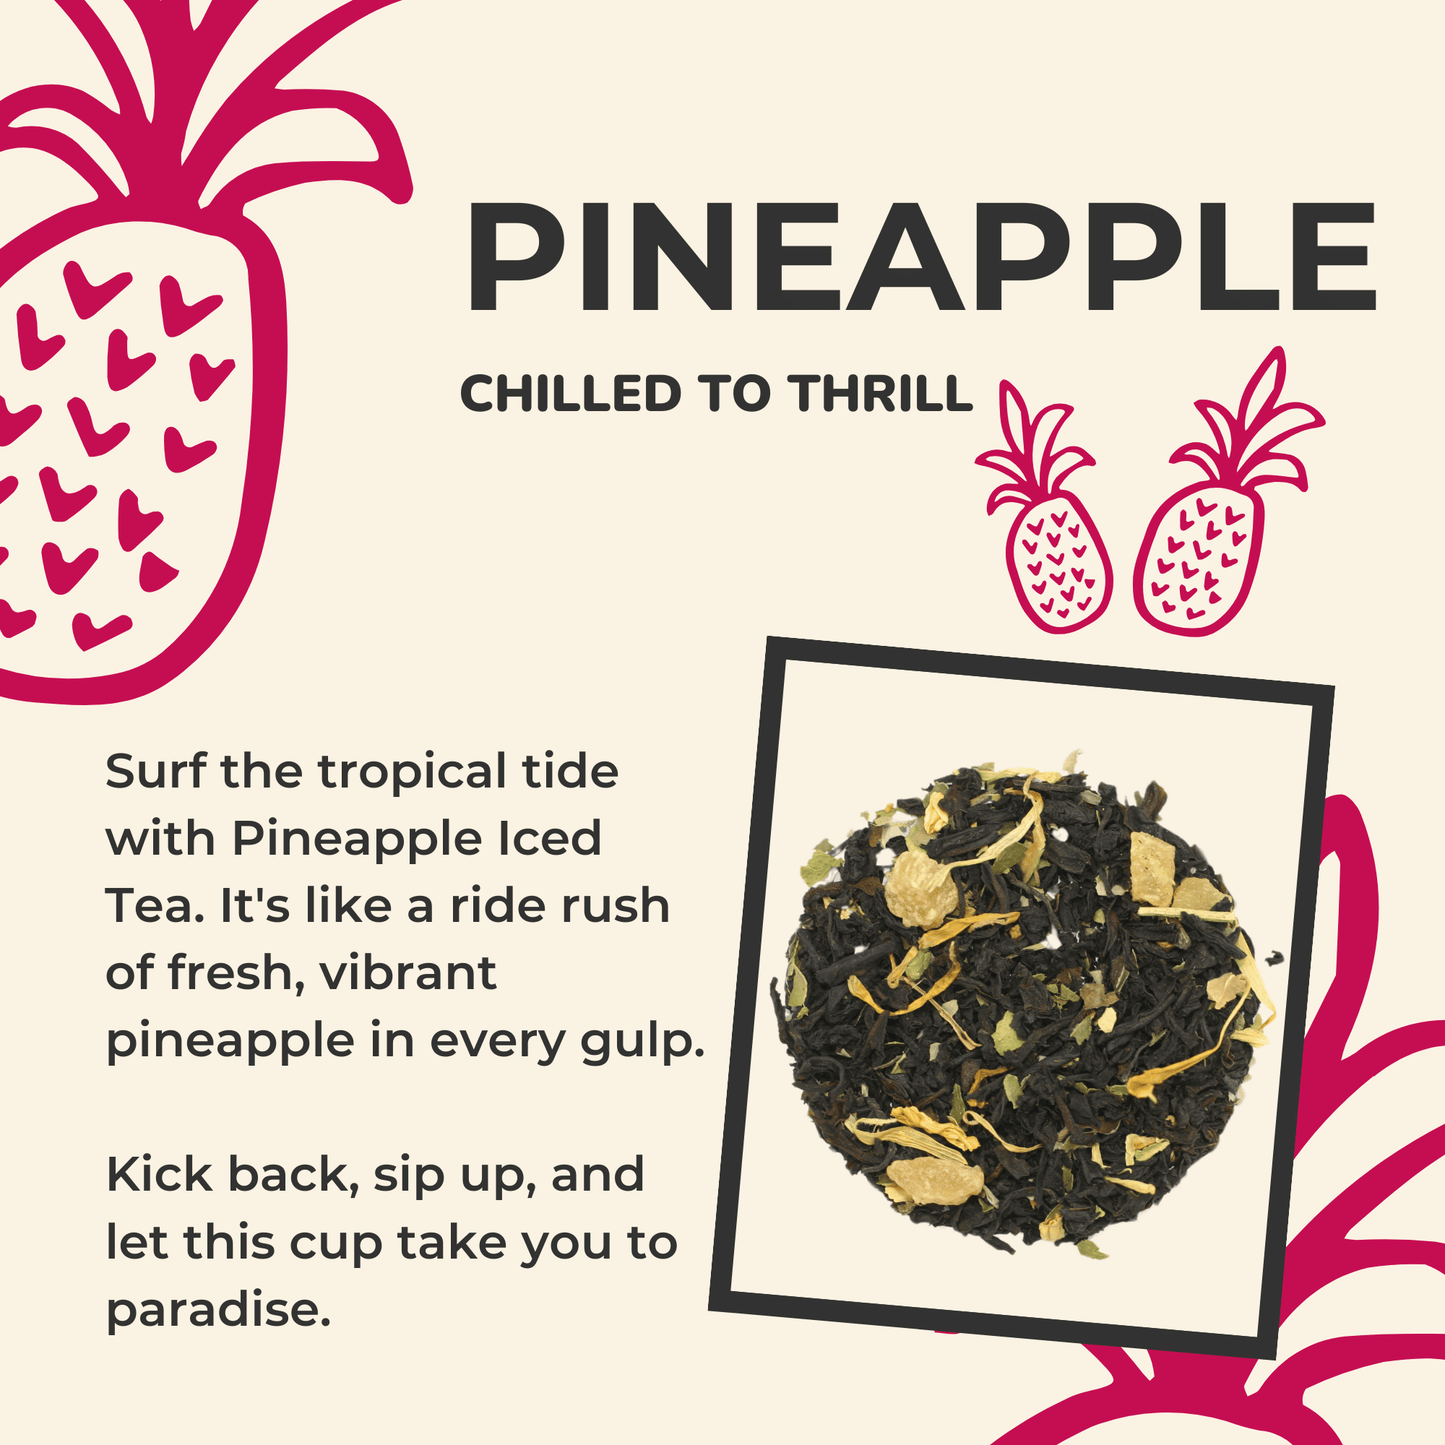 Pineapple Iced Tea. Details ->